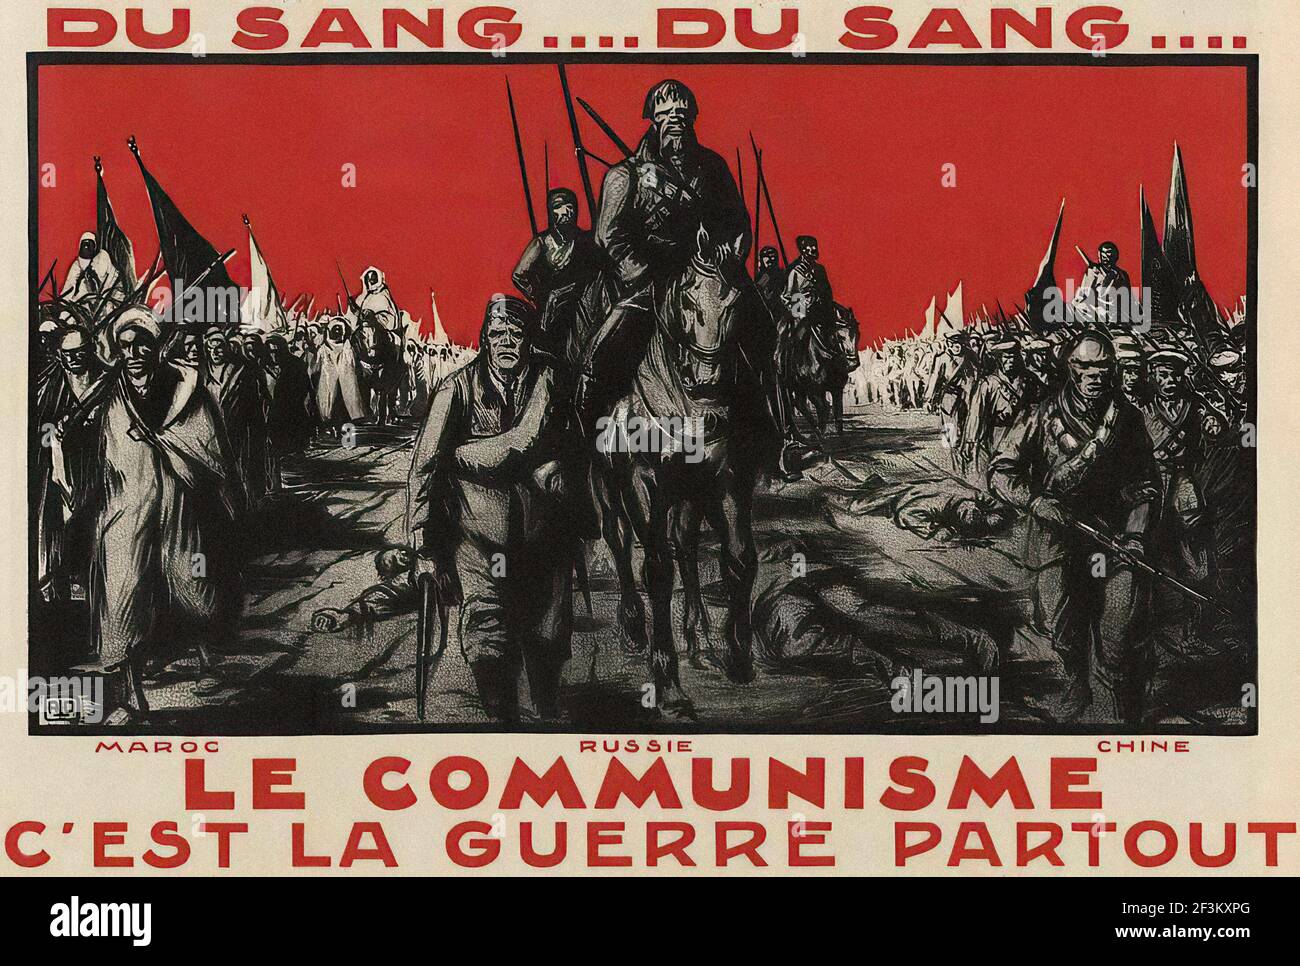 Мировая революция 1920. Антисоветские плакаты 1930. Французская Коммунистическая партия плакаты. Коммунистические плакаты Франции. Плакаты немецких коммунистов.